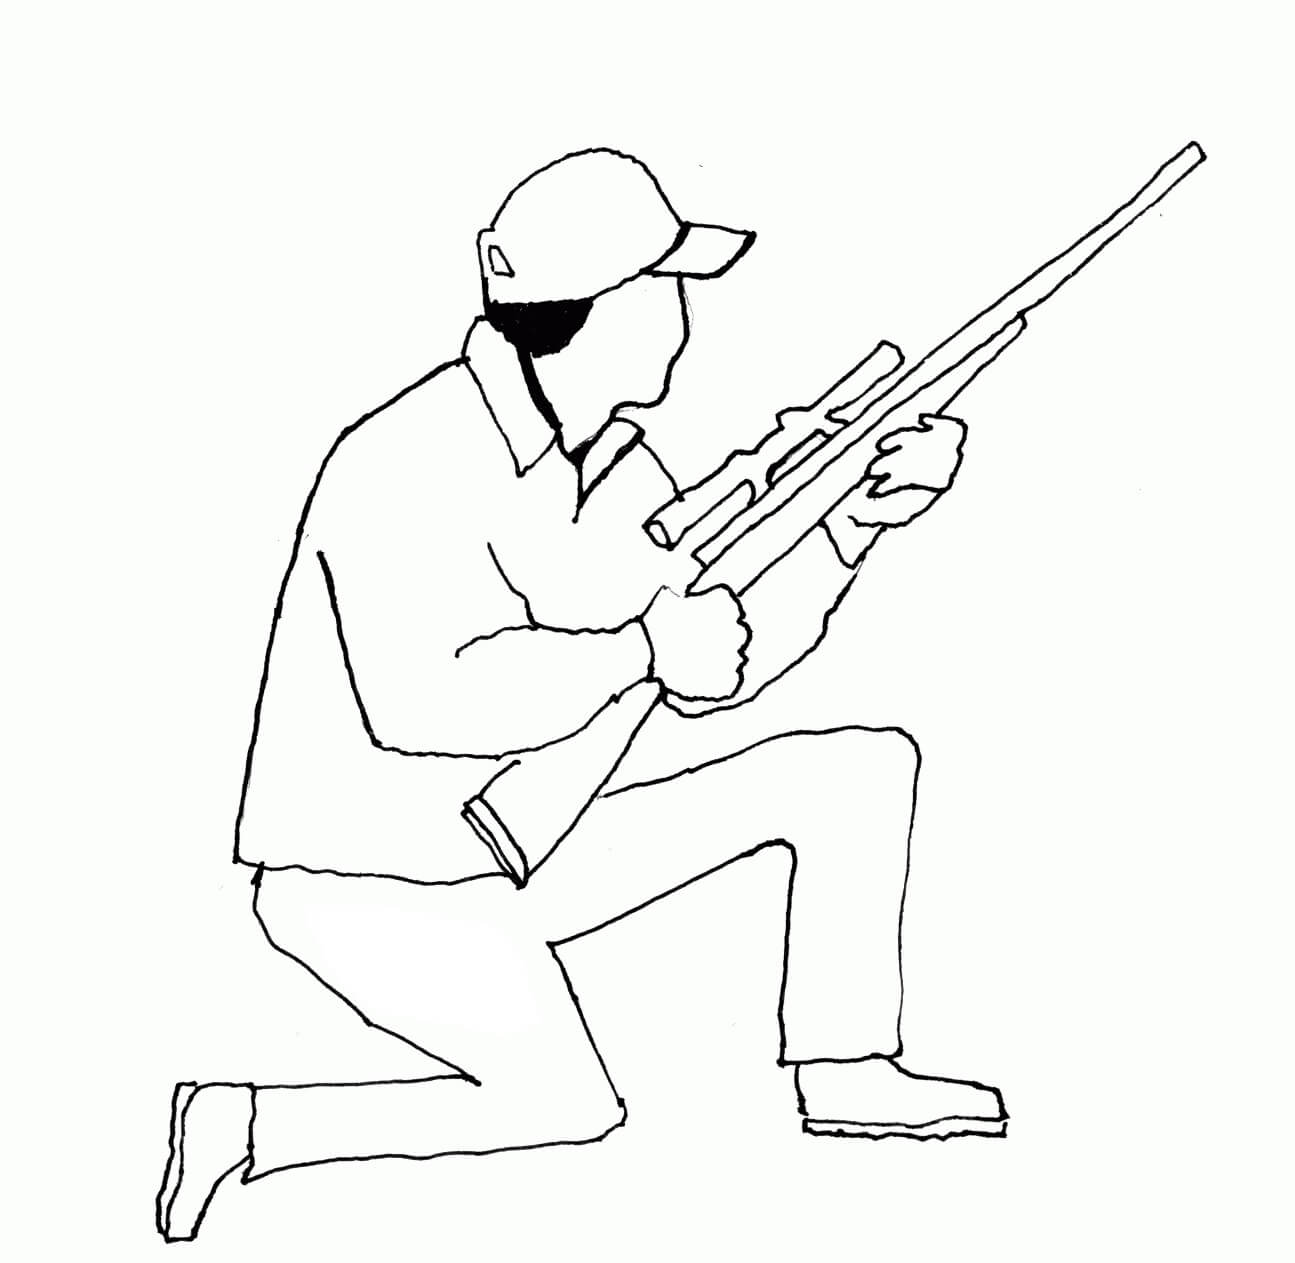 Zeichnender Jäger mit Waffe